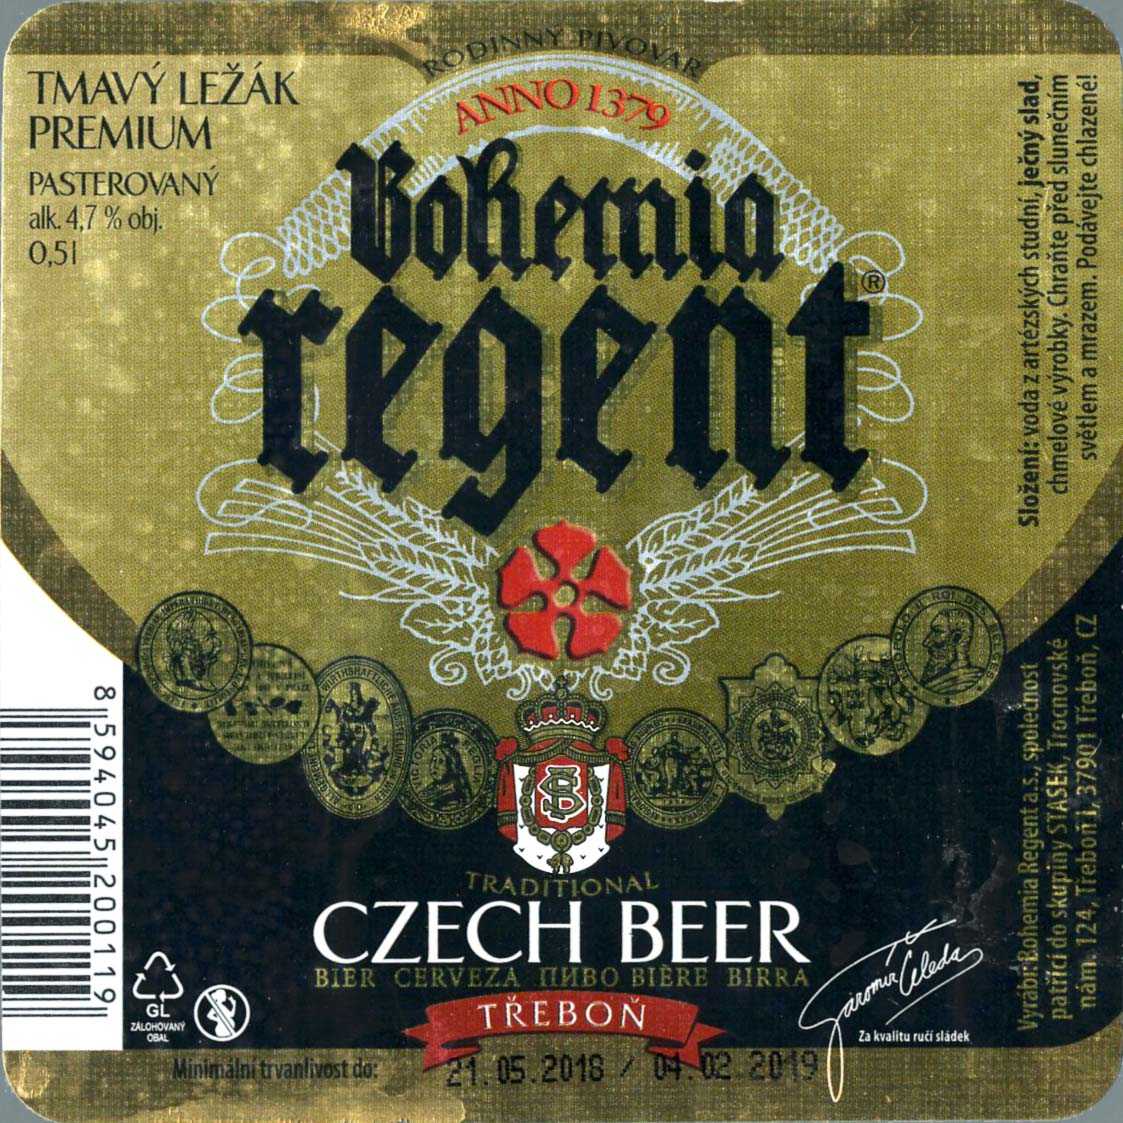 Немецкое пиво: как разобраться в стилях, как правильно наливать, и как его пьют сами немцы